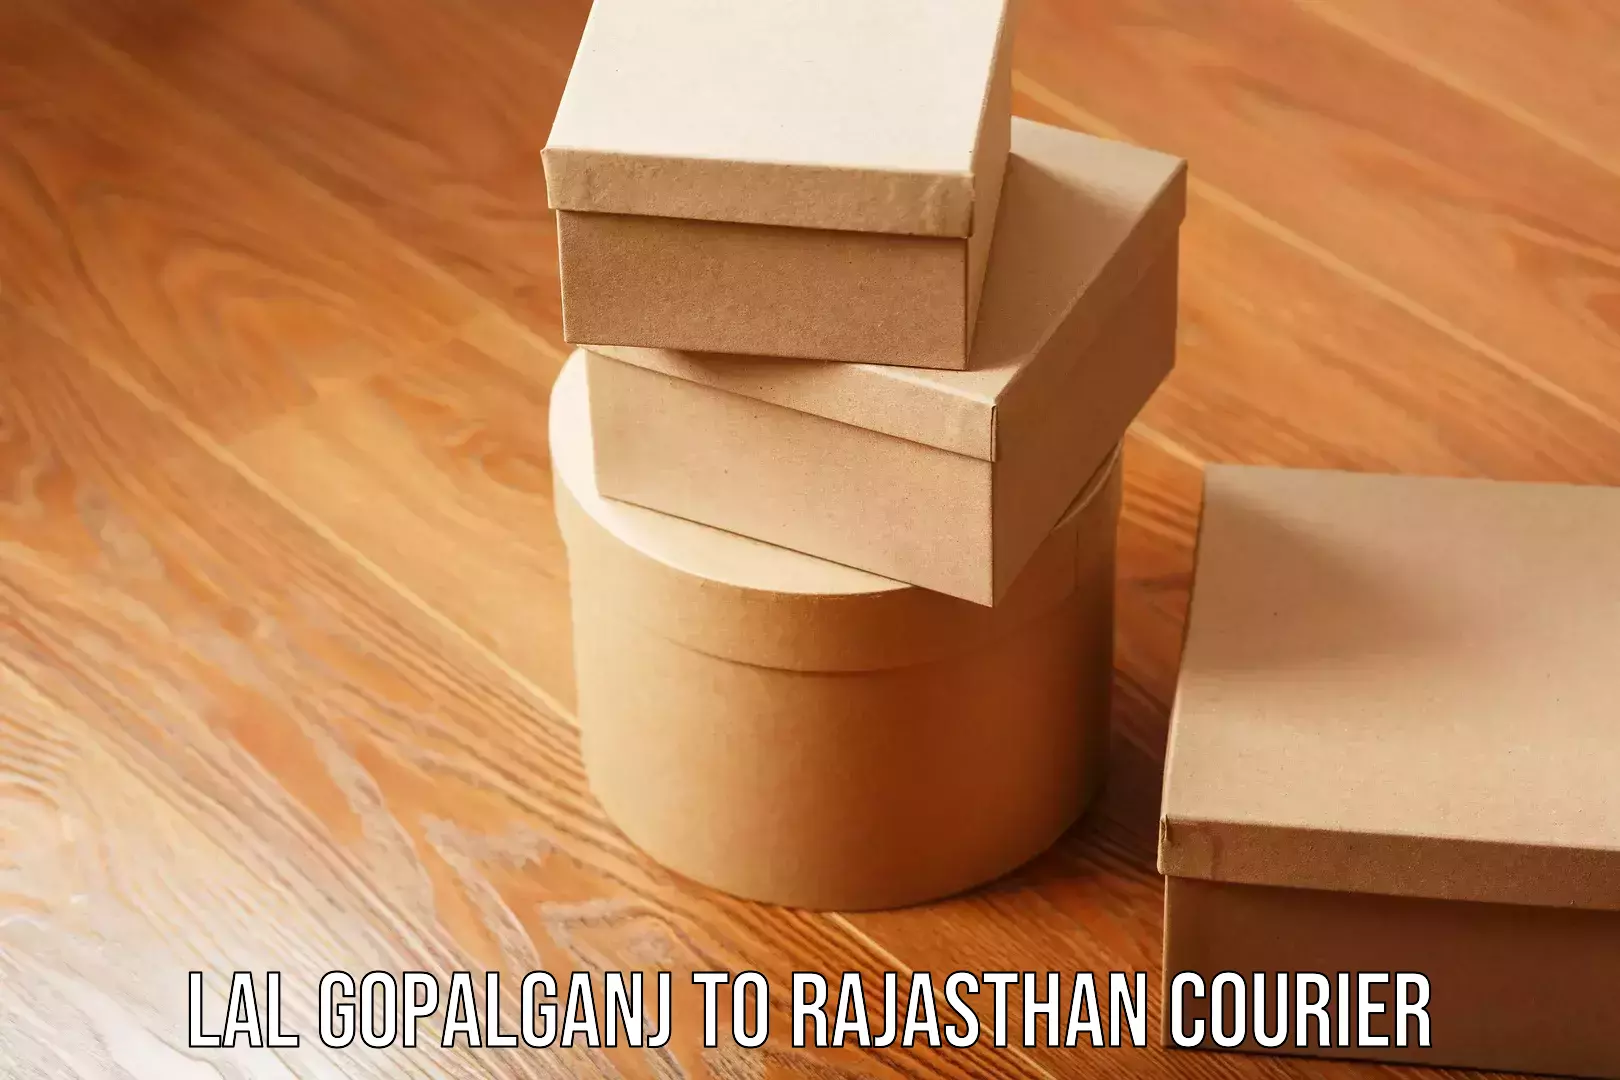 Stress-free household moving Lal Gopalganj to Rajasthan